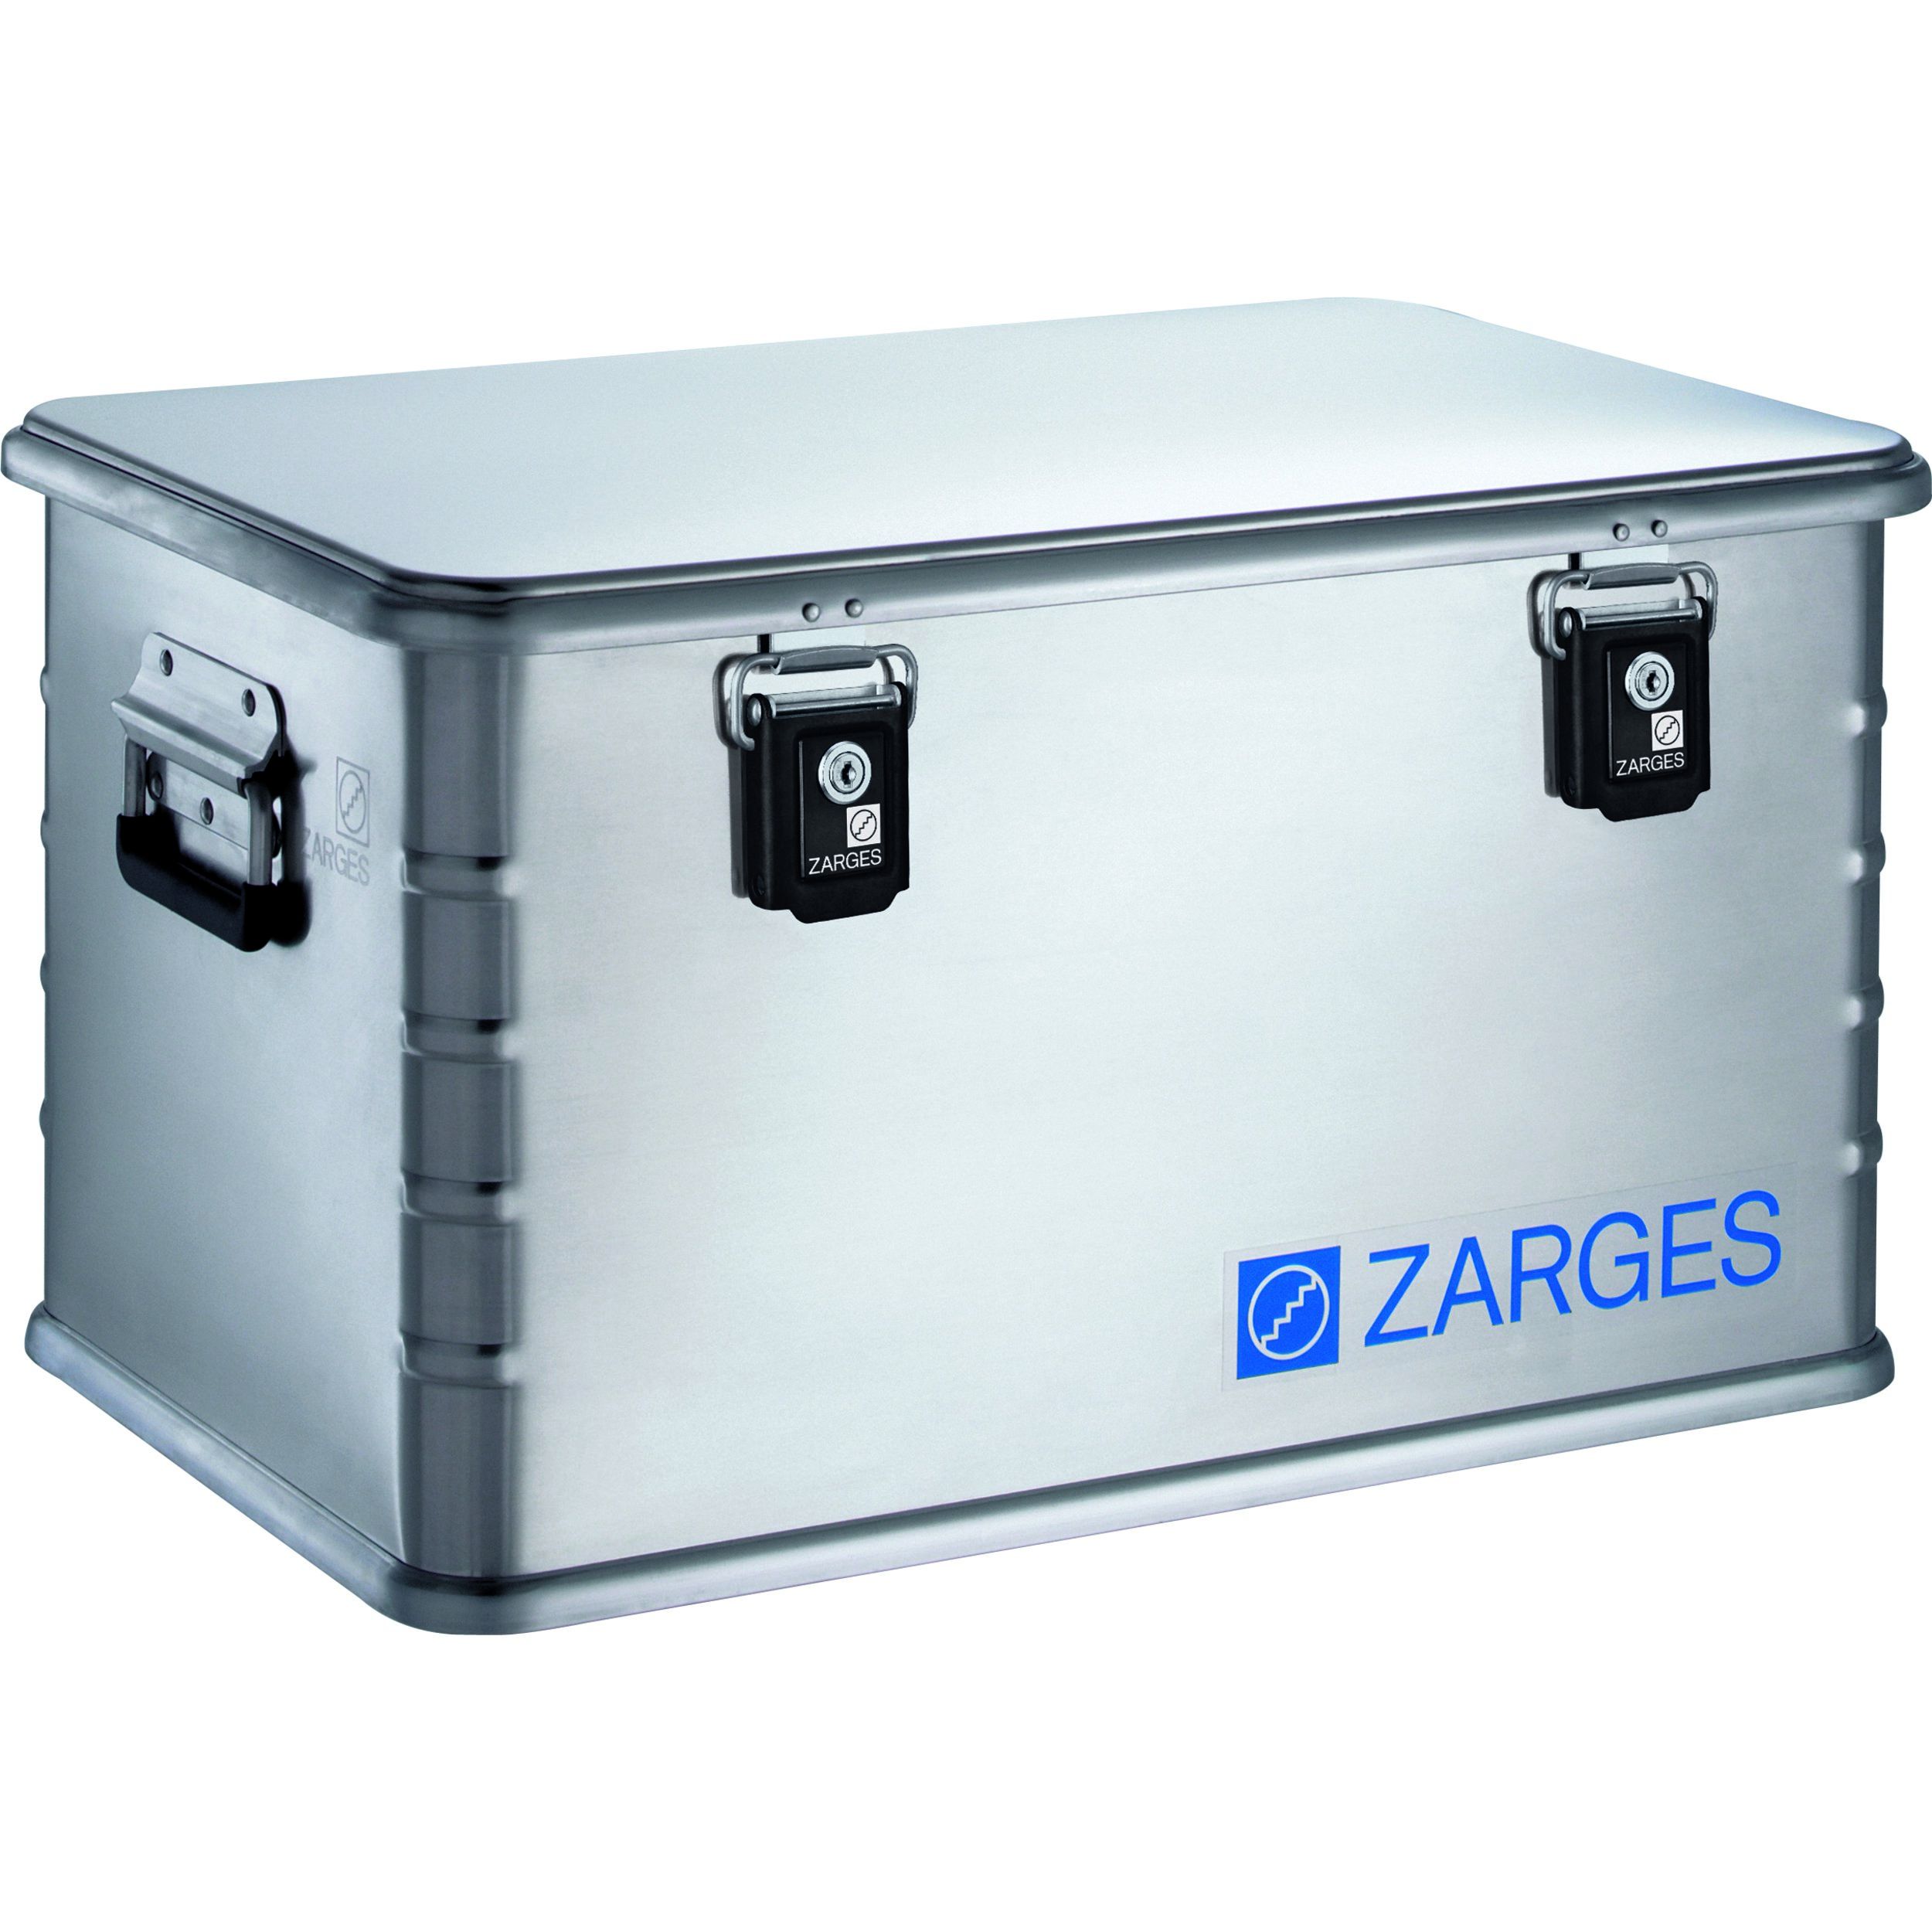 ZARGES Mini-Box Plus 600 x 400 x 330 mm